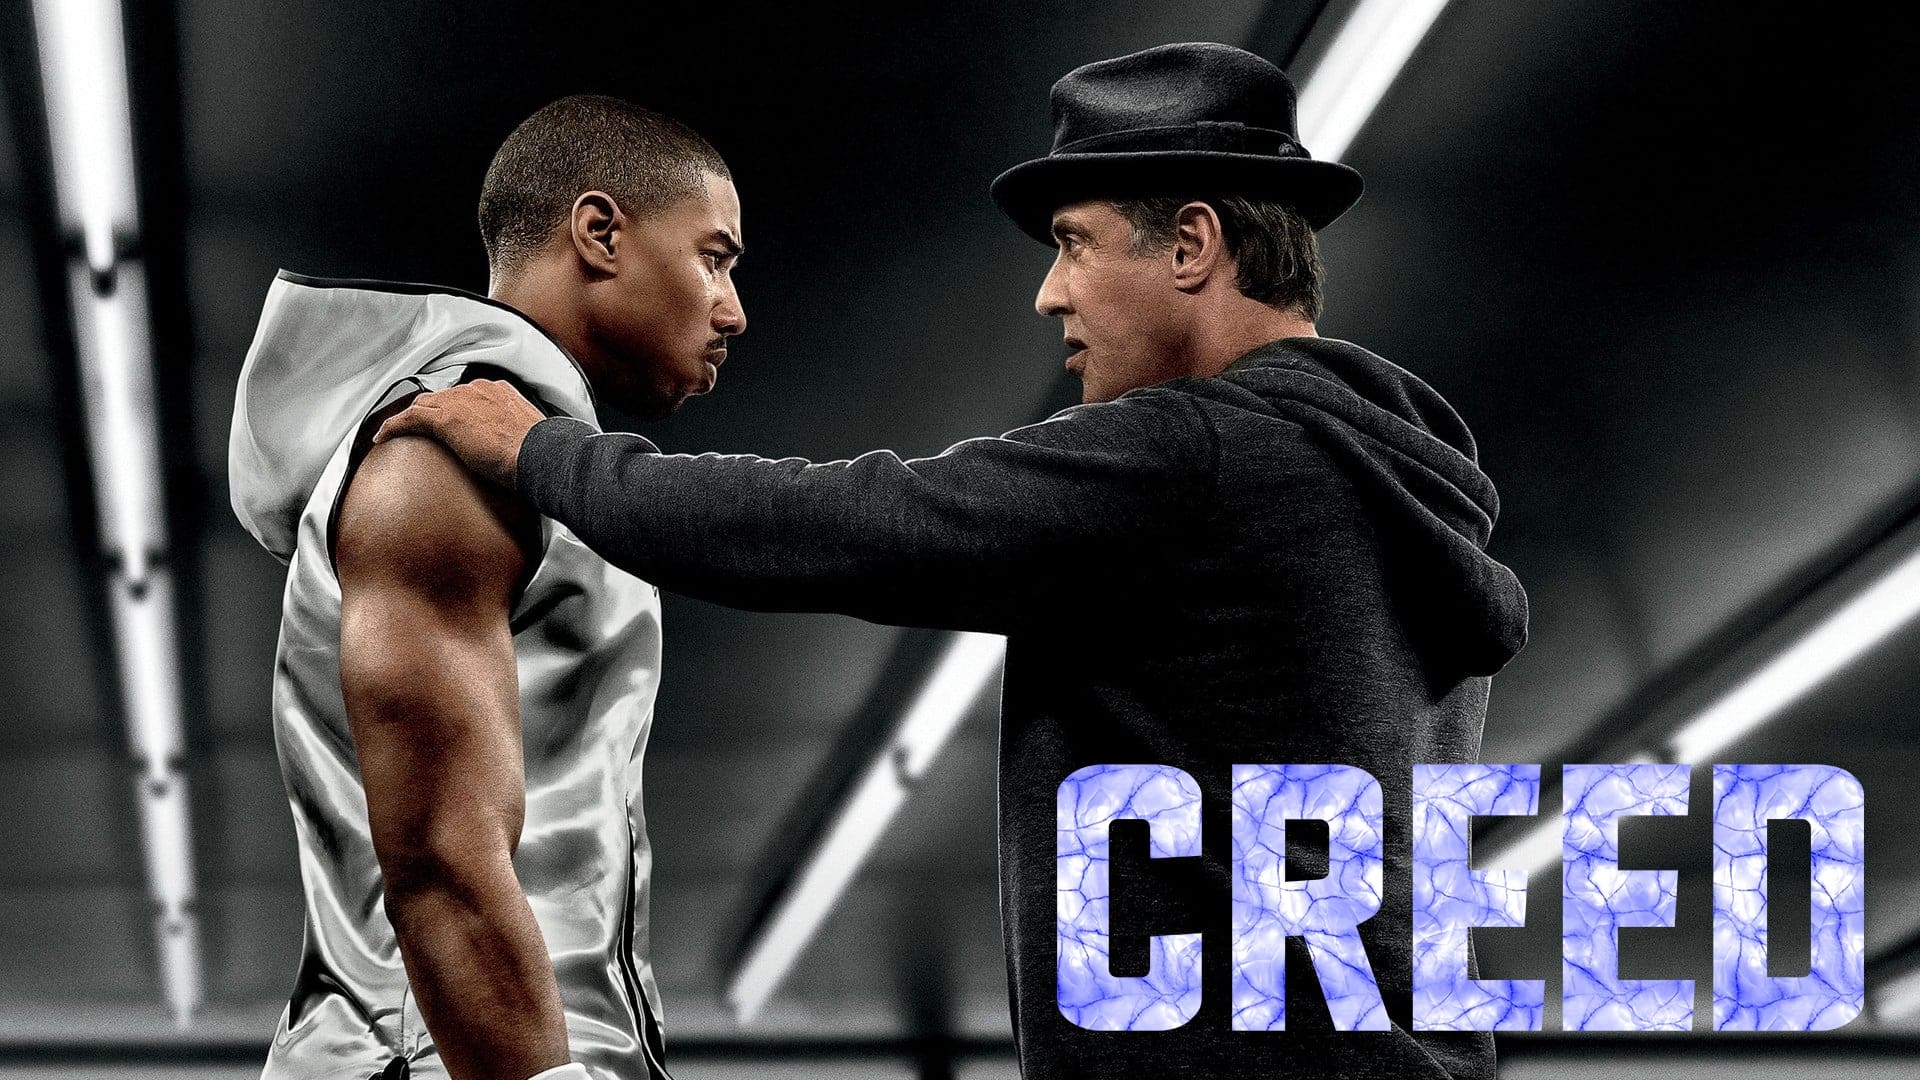 Creed - Apollo fia (2015)